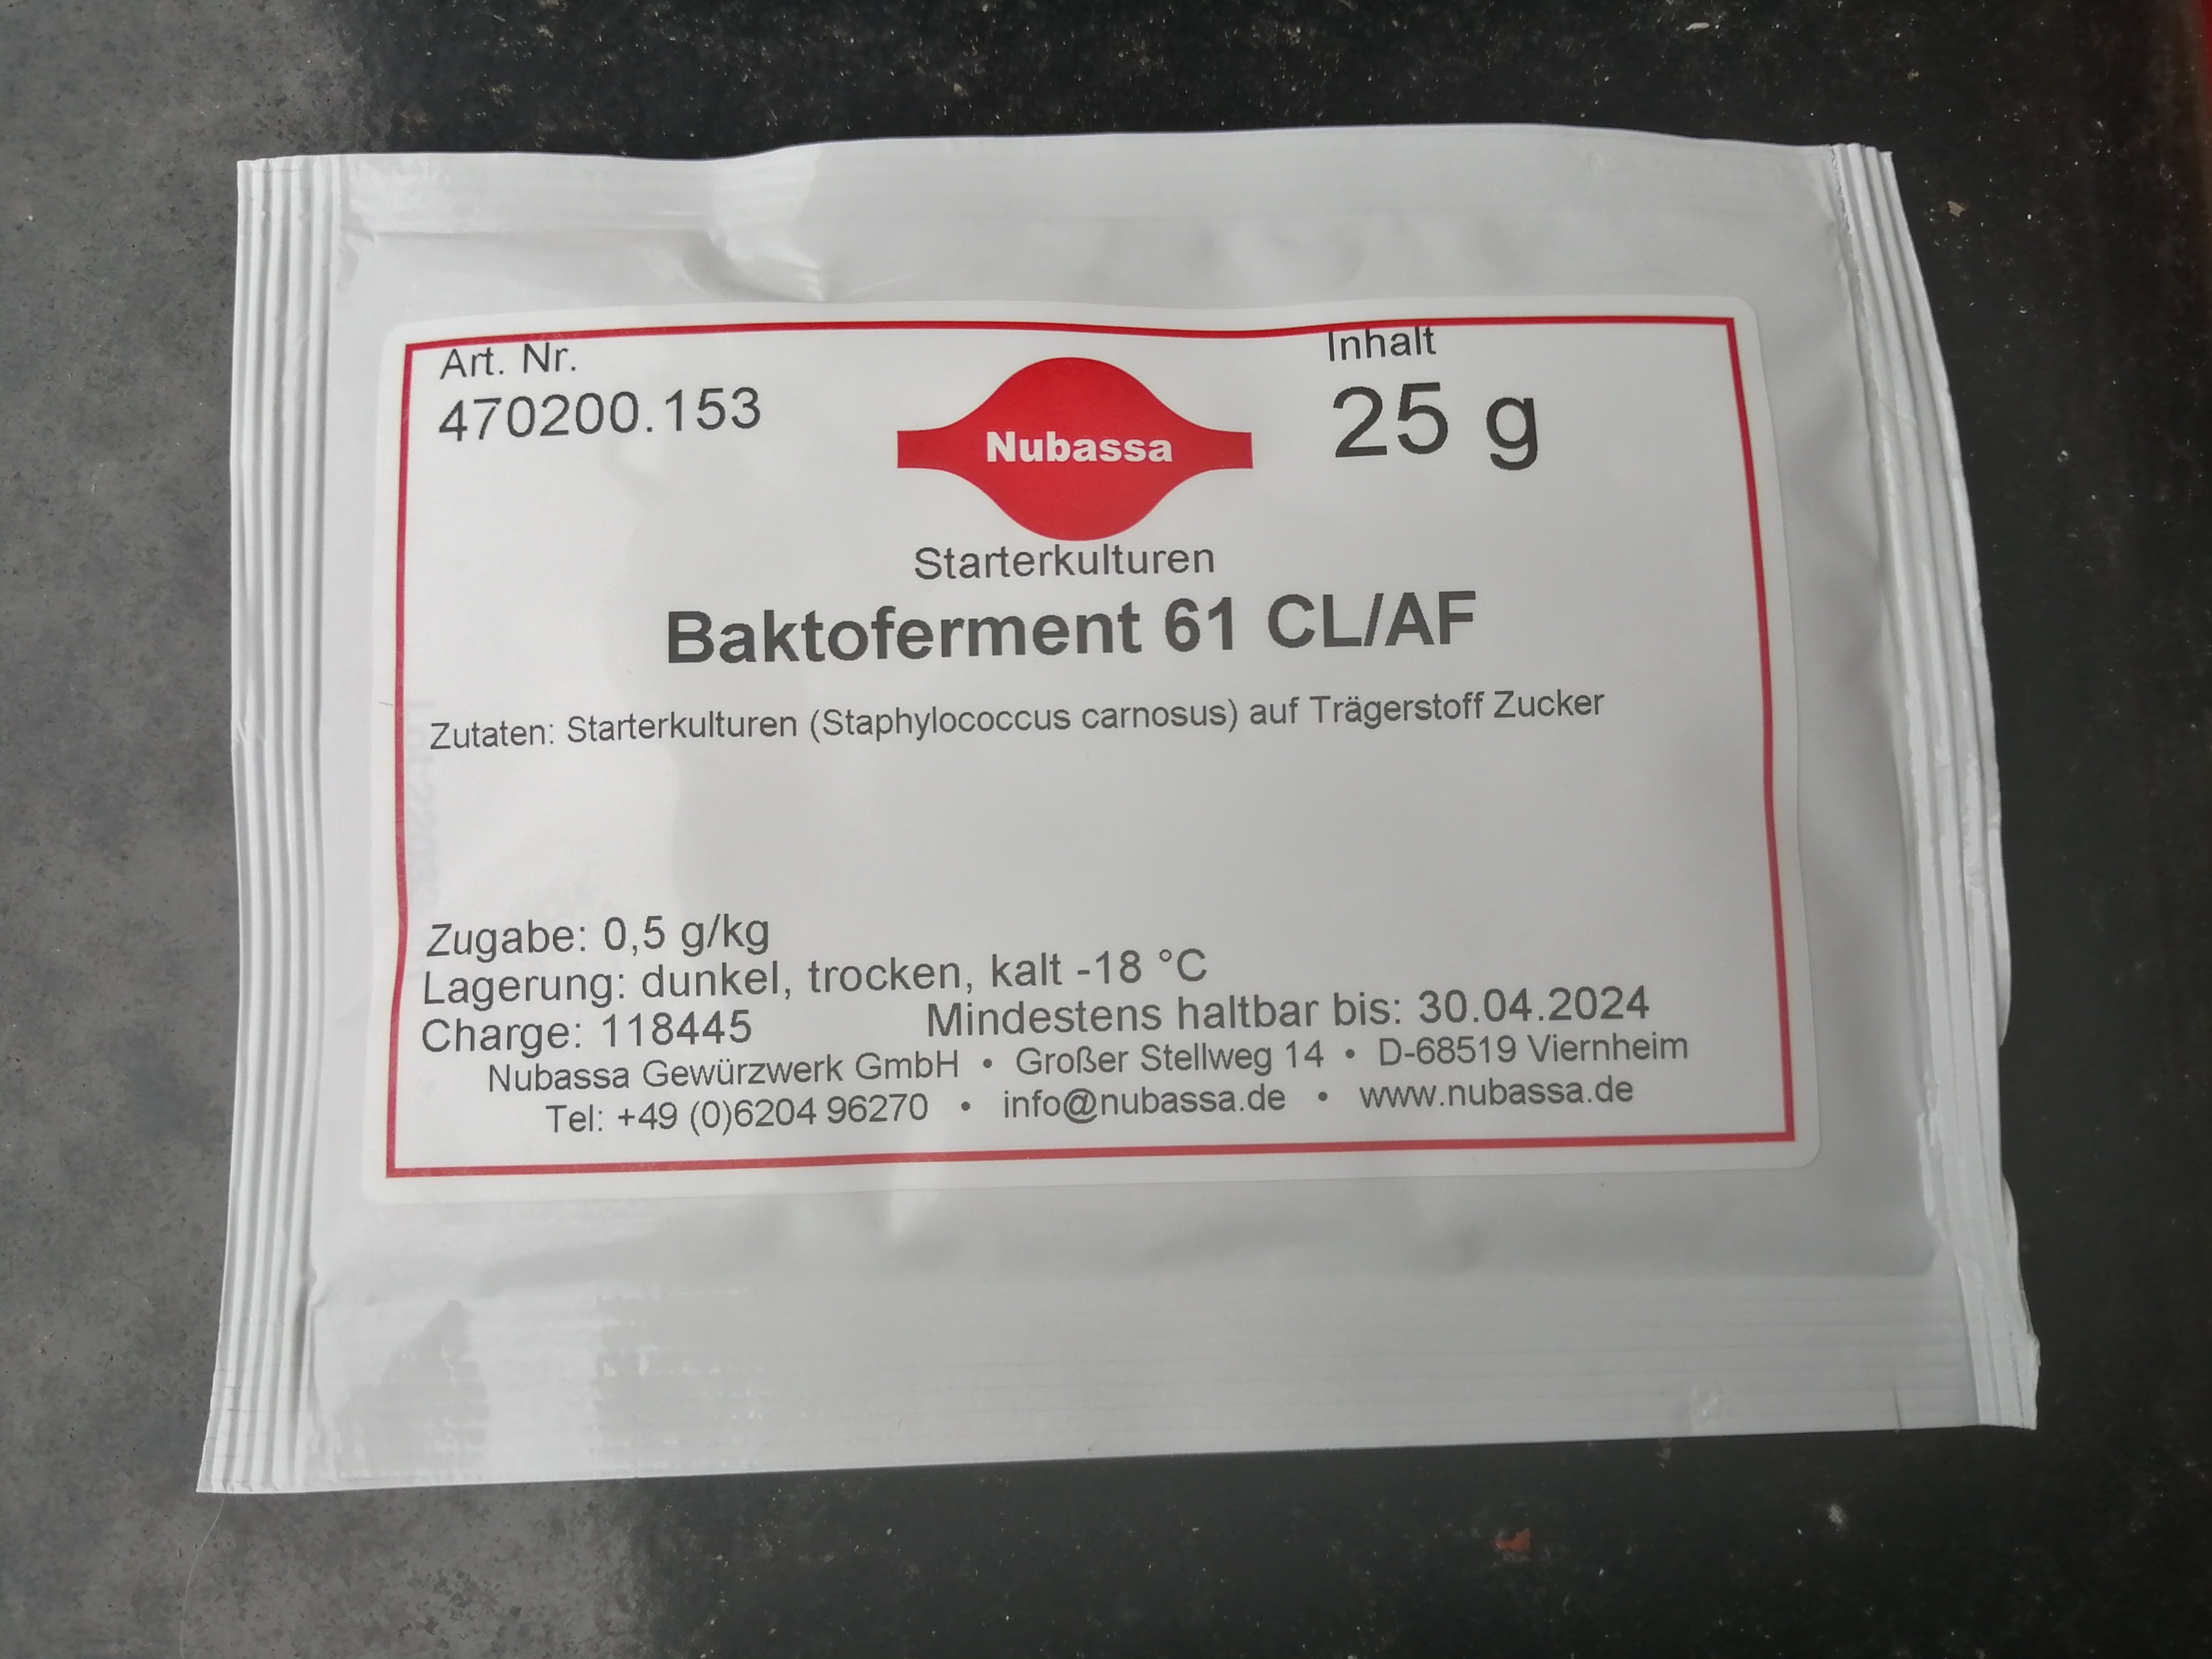 Baktoferm 4 CL/AF